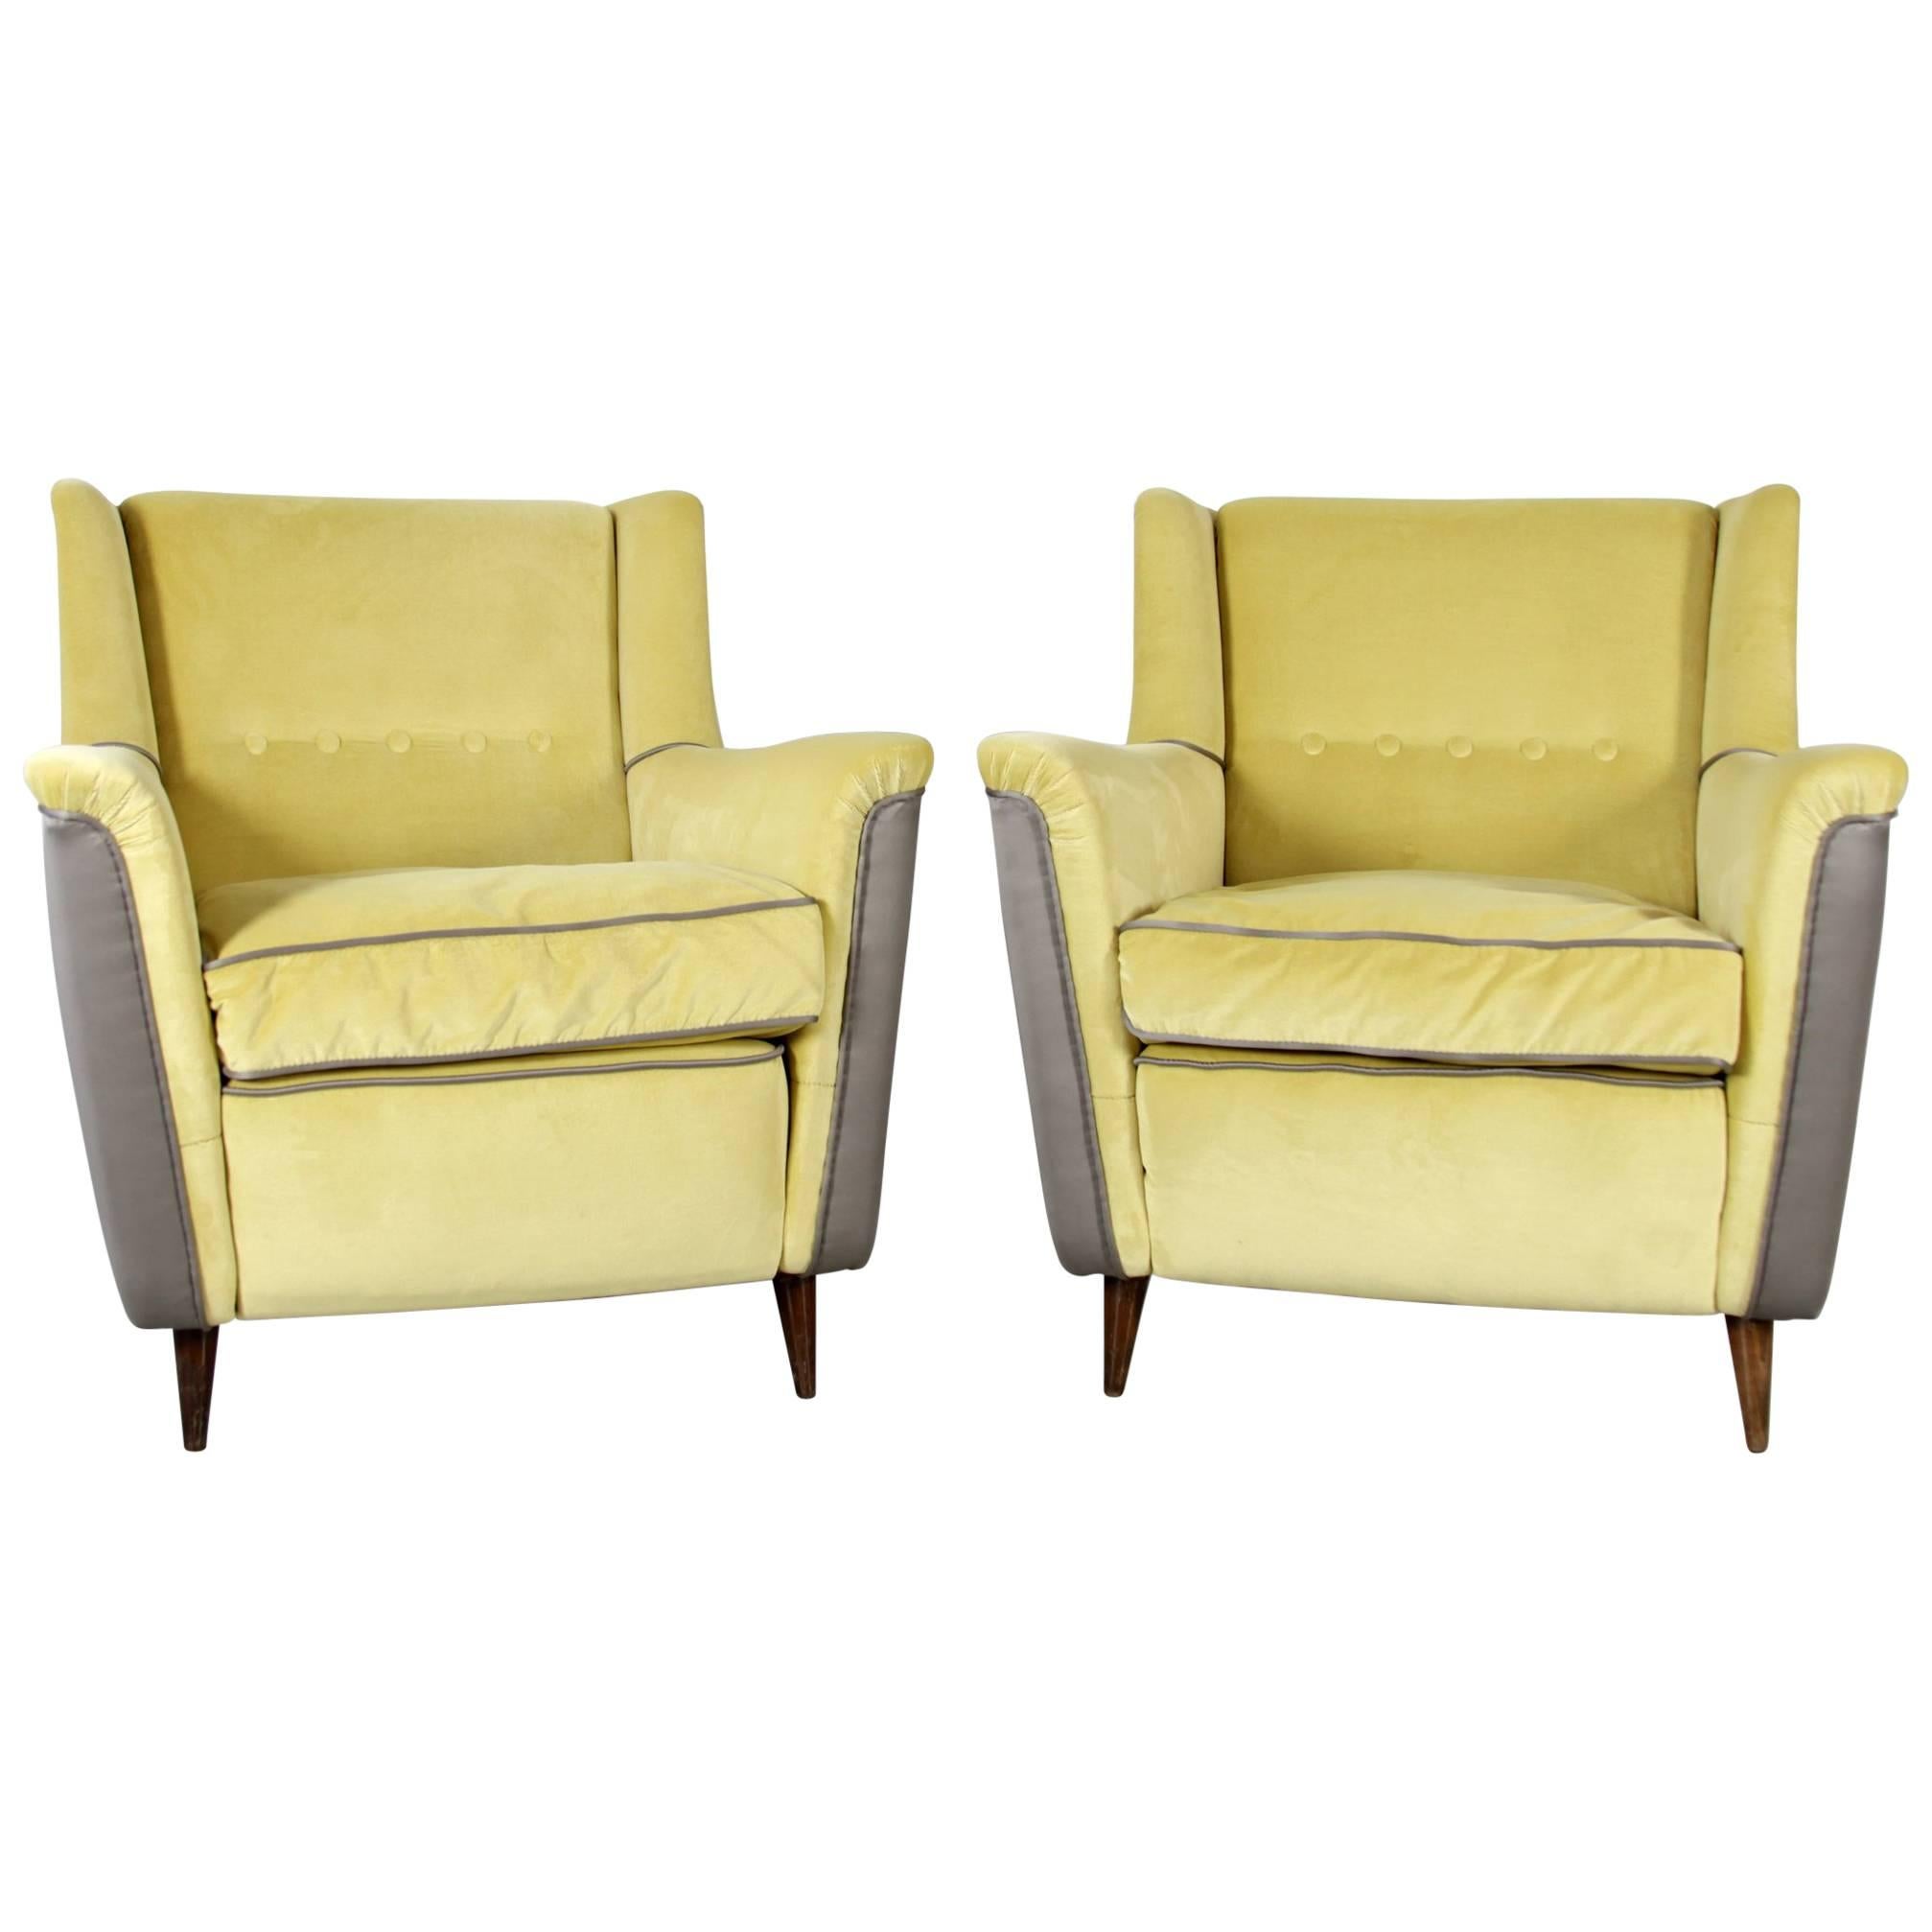 Pair of Cassina Chairs, Model 809, Design Figli de Amadeo dei Cassina, 1958